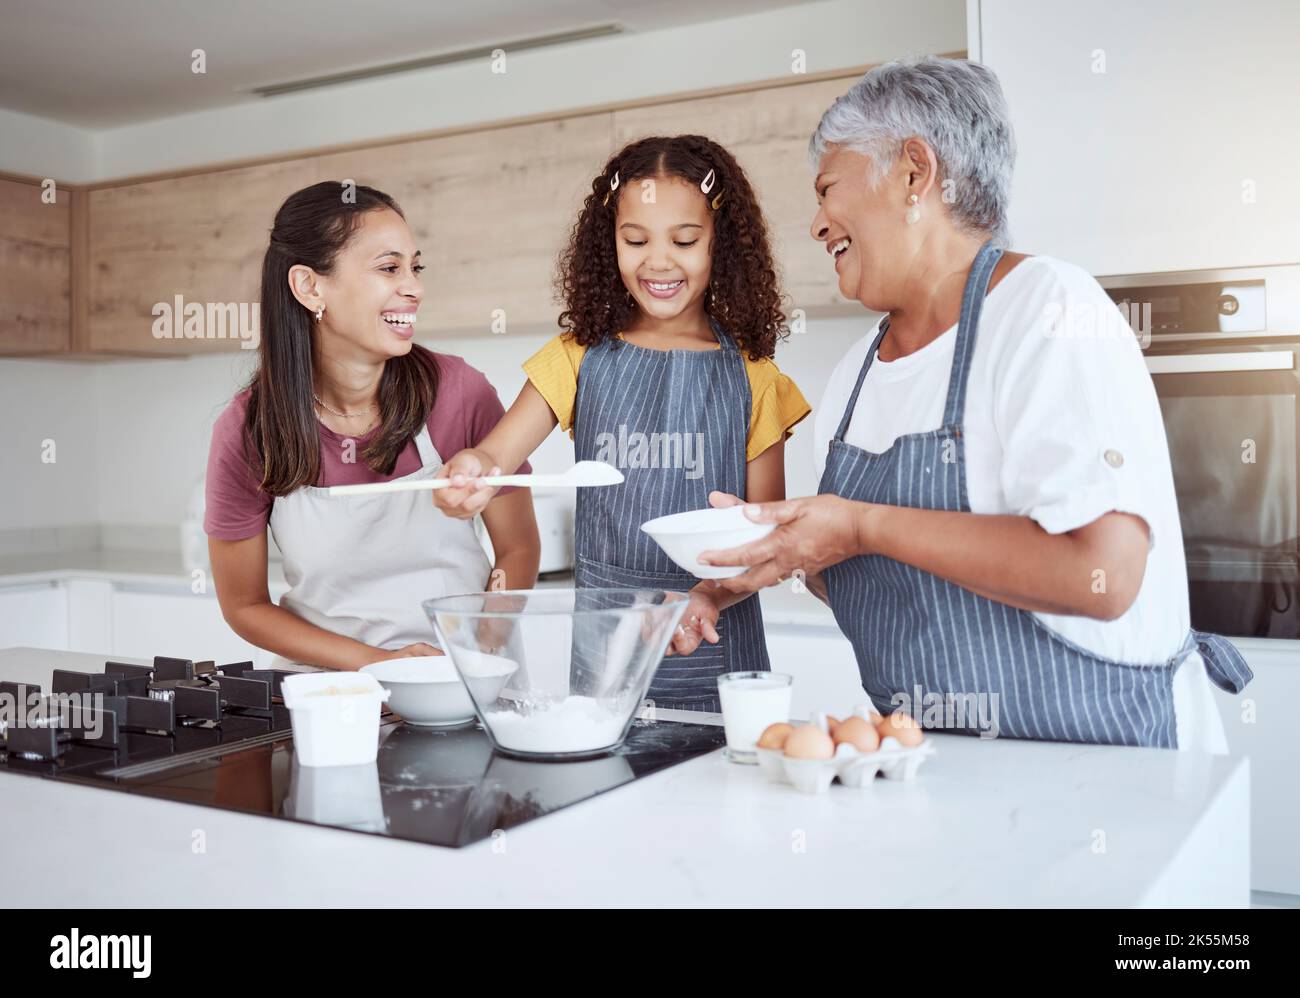 Famille heureuse, cuisine et pâtisserie dans la cuisine développement de l'enfant, apprentissage et activités de compétences. Grand-mère brésilienne, la mère et la fille liant à travers Banque D'Images